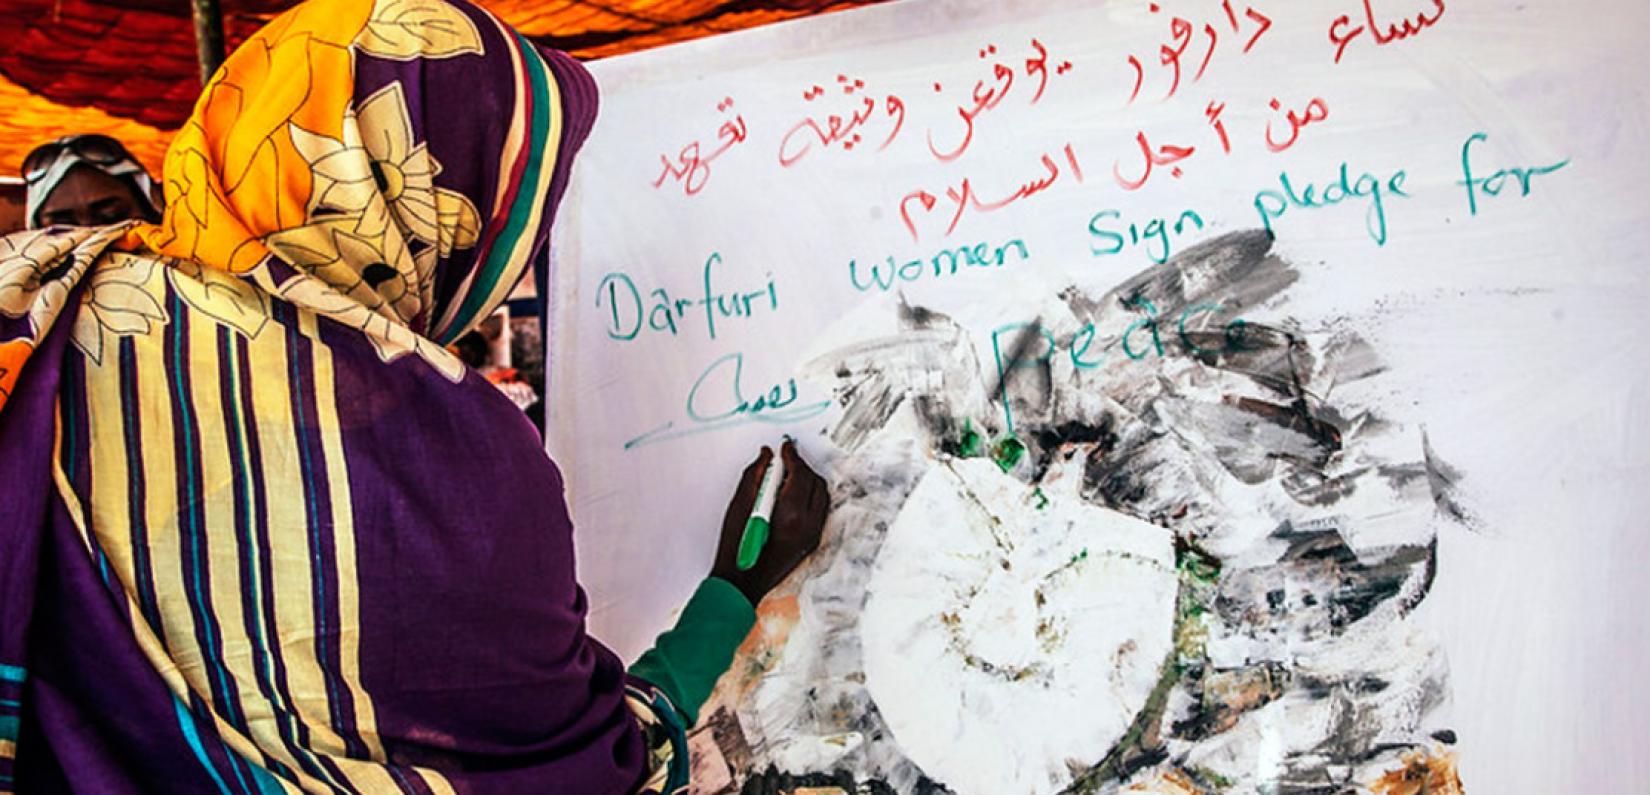 As mulheres desempenharam um papel proeminente no processo de transição política no Sudão, o que resultou em mulheres ocupando cargos de liderança no governo, incluindo a primeira mulher ministra das Relações Exteriores e chefe de Justiça do país. Foto: UNAMID/Mohamad Almahady